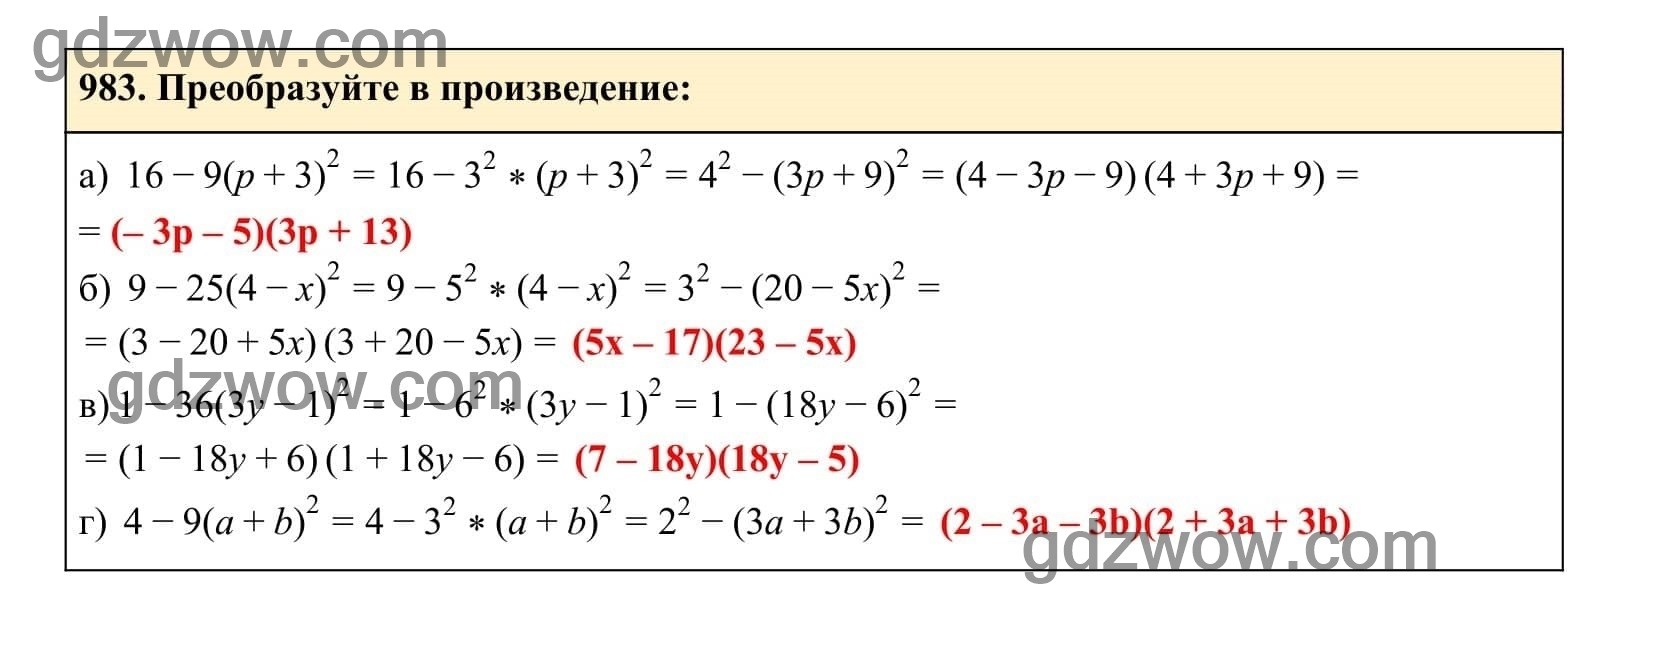 Упражнение 983 - ГДЗ по Алгебре 7 класс Учебник Макарычев (решебник) - GDZwow